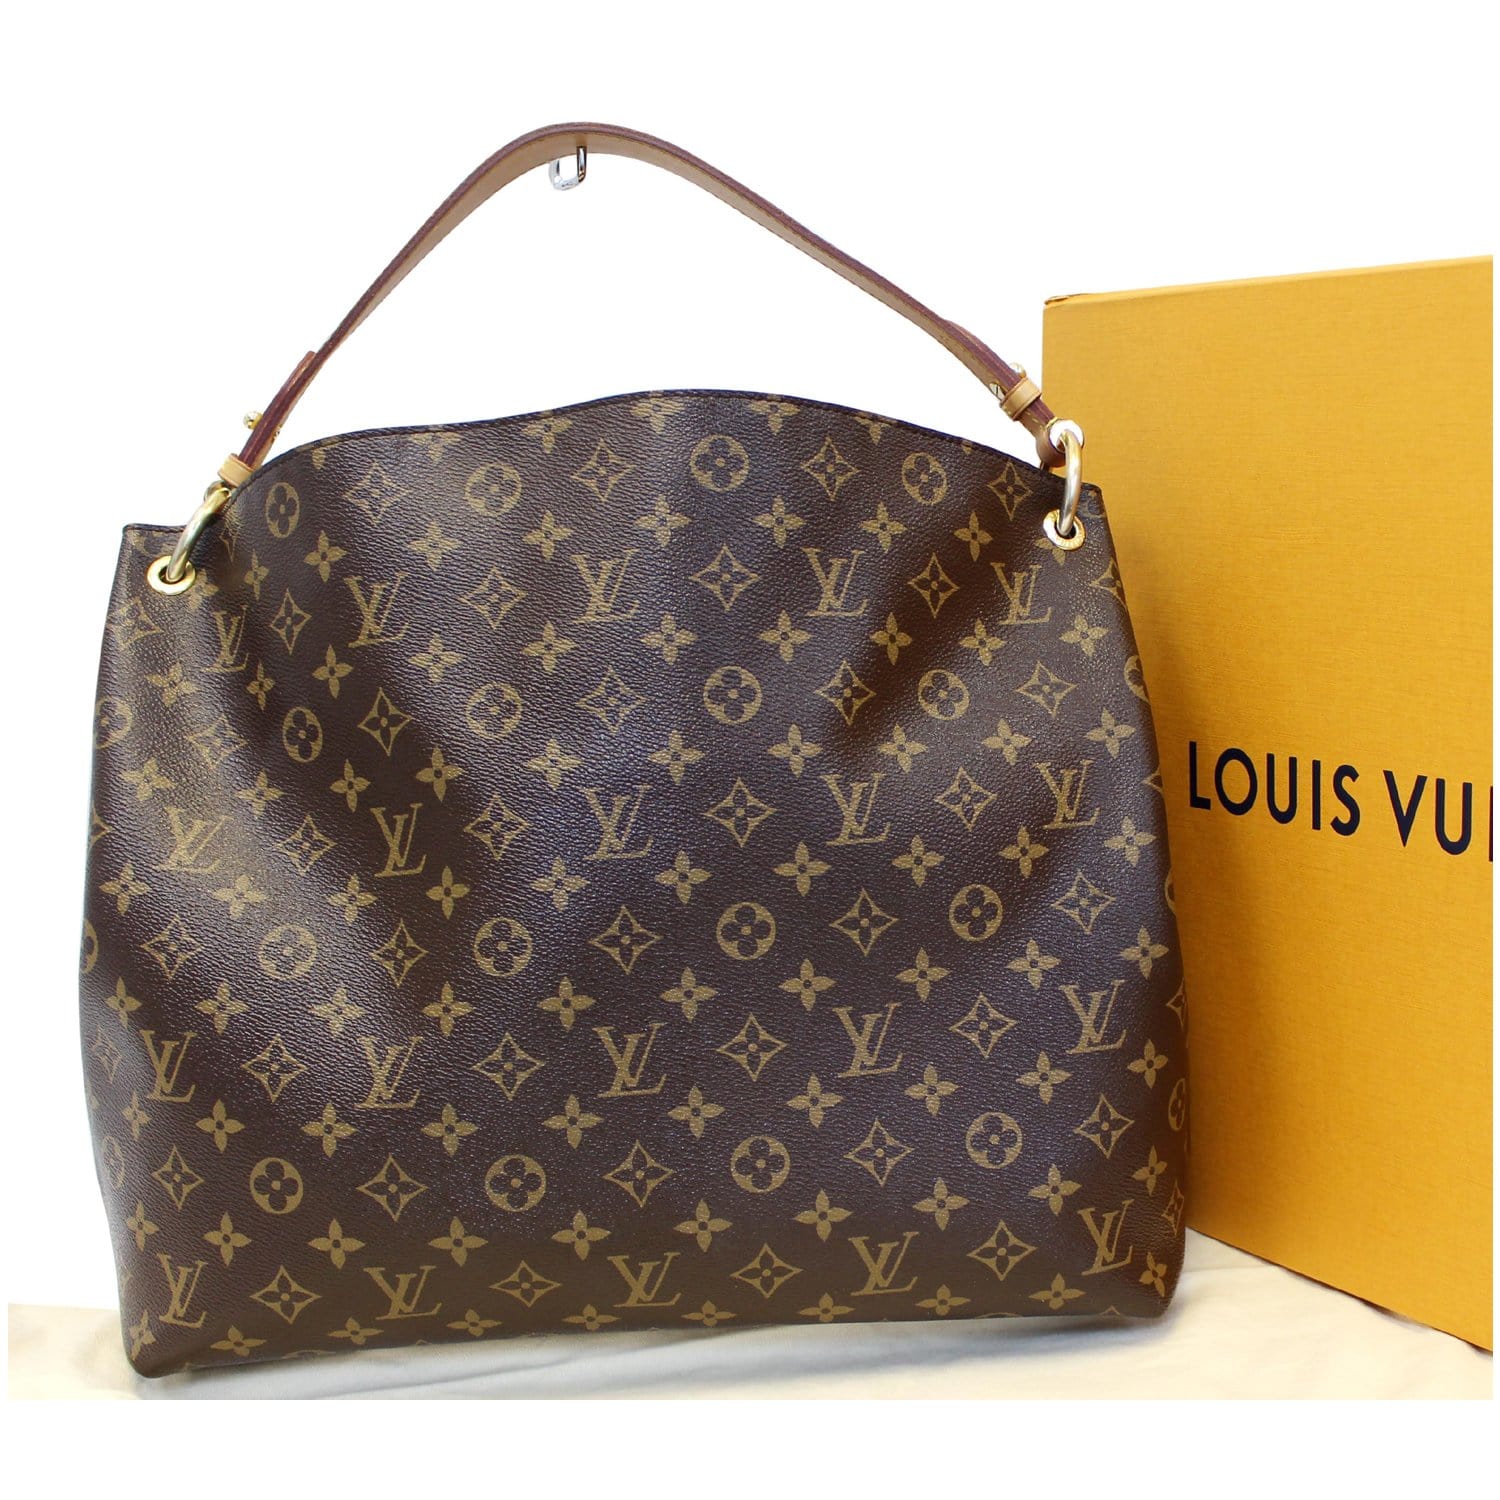  Louis Vuitton  Graceful MM  Lv  Monogram Canvas Shoulder Bag 